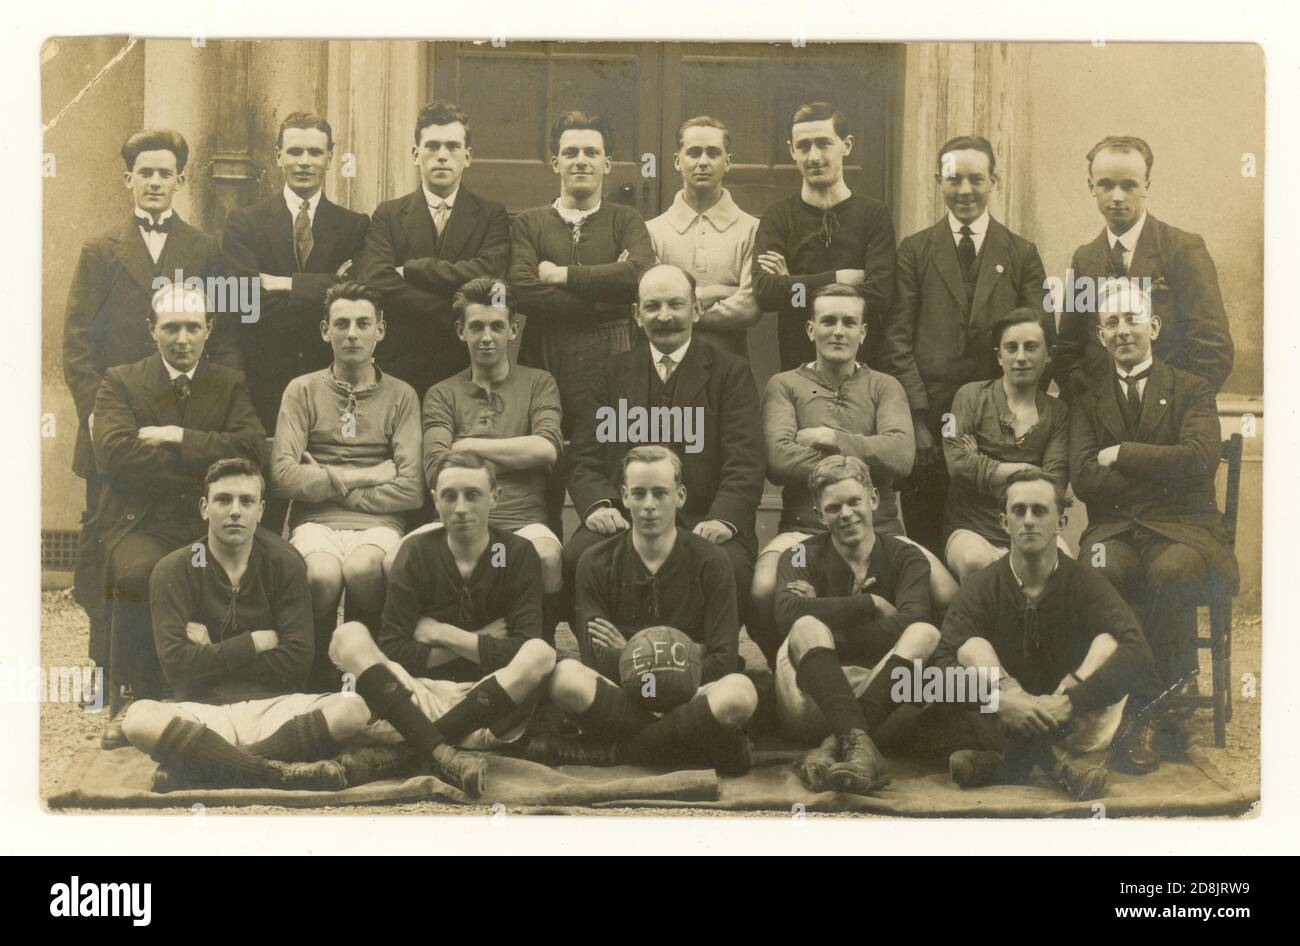 Originalpostkarte aus der Zeit vor WW1 des Fußballteams - E.F.C. ist auf dem Fußball geschrieben, aber nicht bekannt, ob dieser Everton Football Club, um 1912, 1913. Unbekannter Ort, Großbritannien Stockfoto